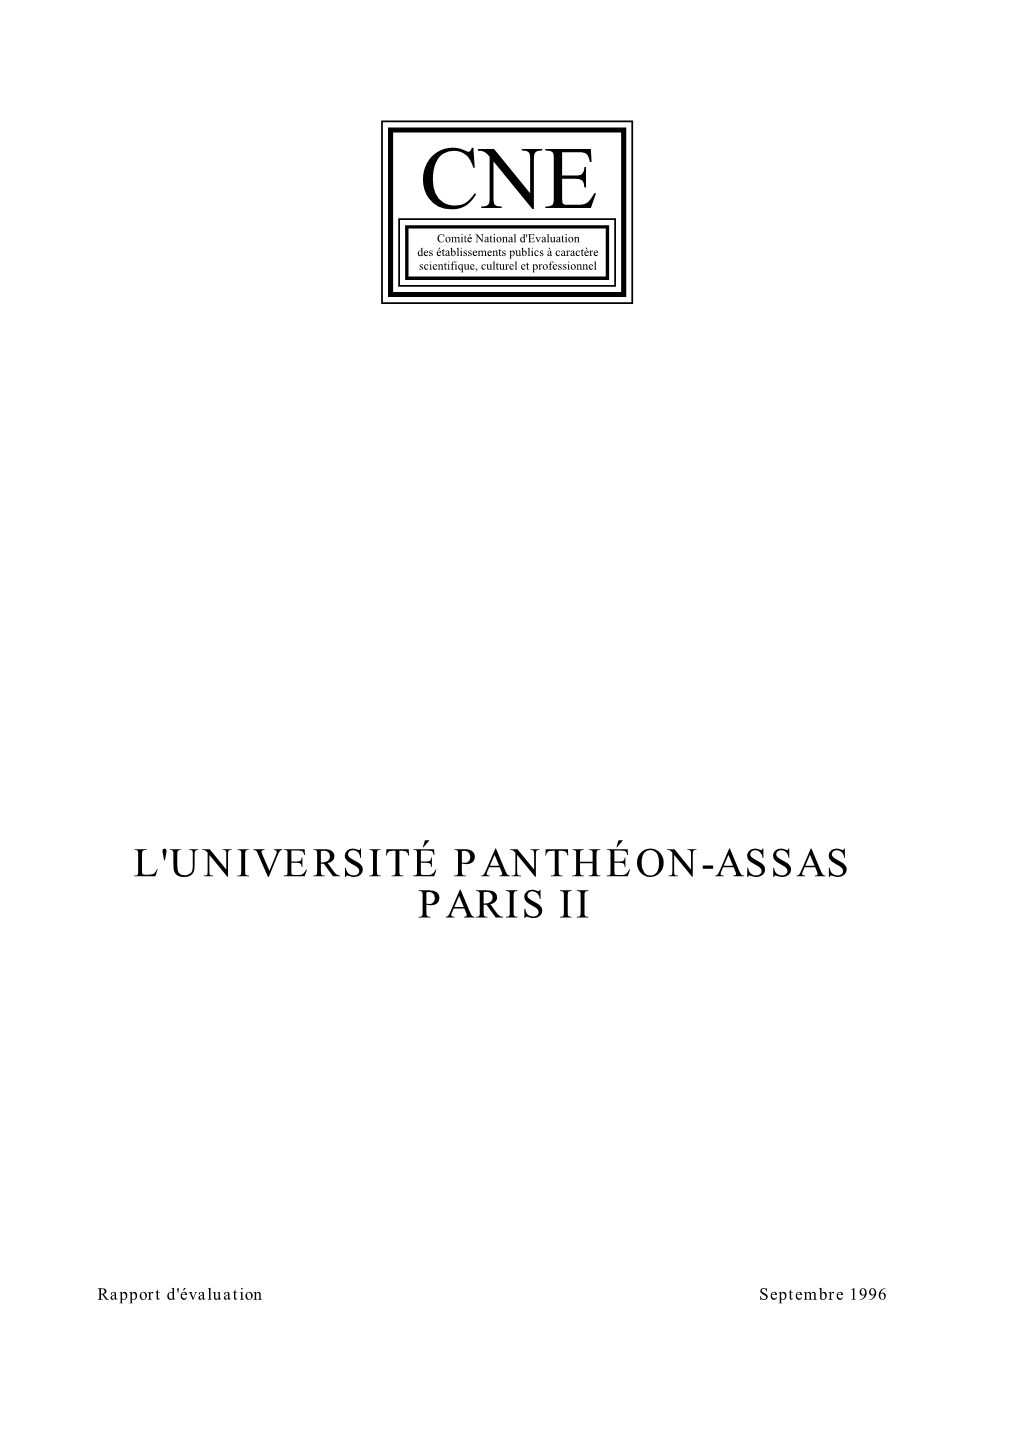 Rapport D'évaluation De L'université Panthéon-Assas